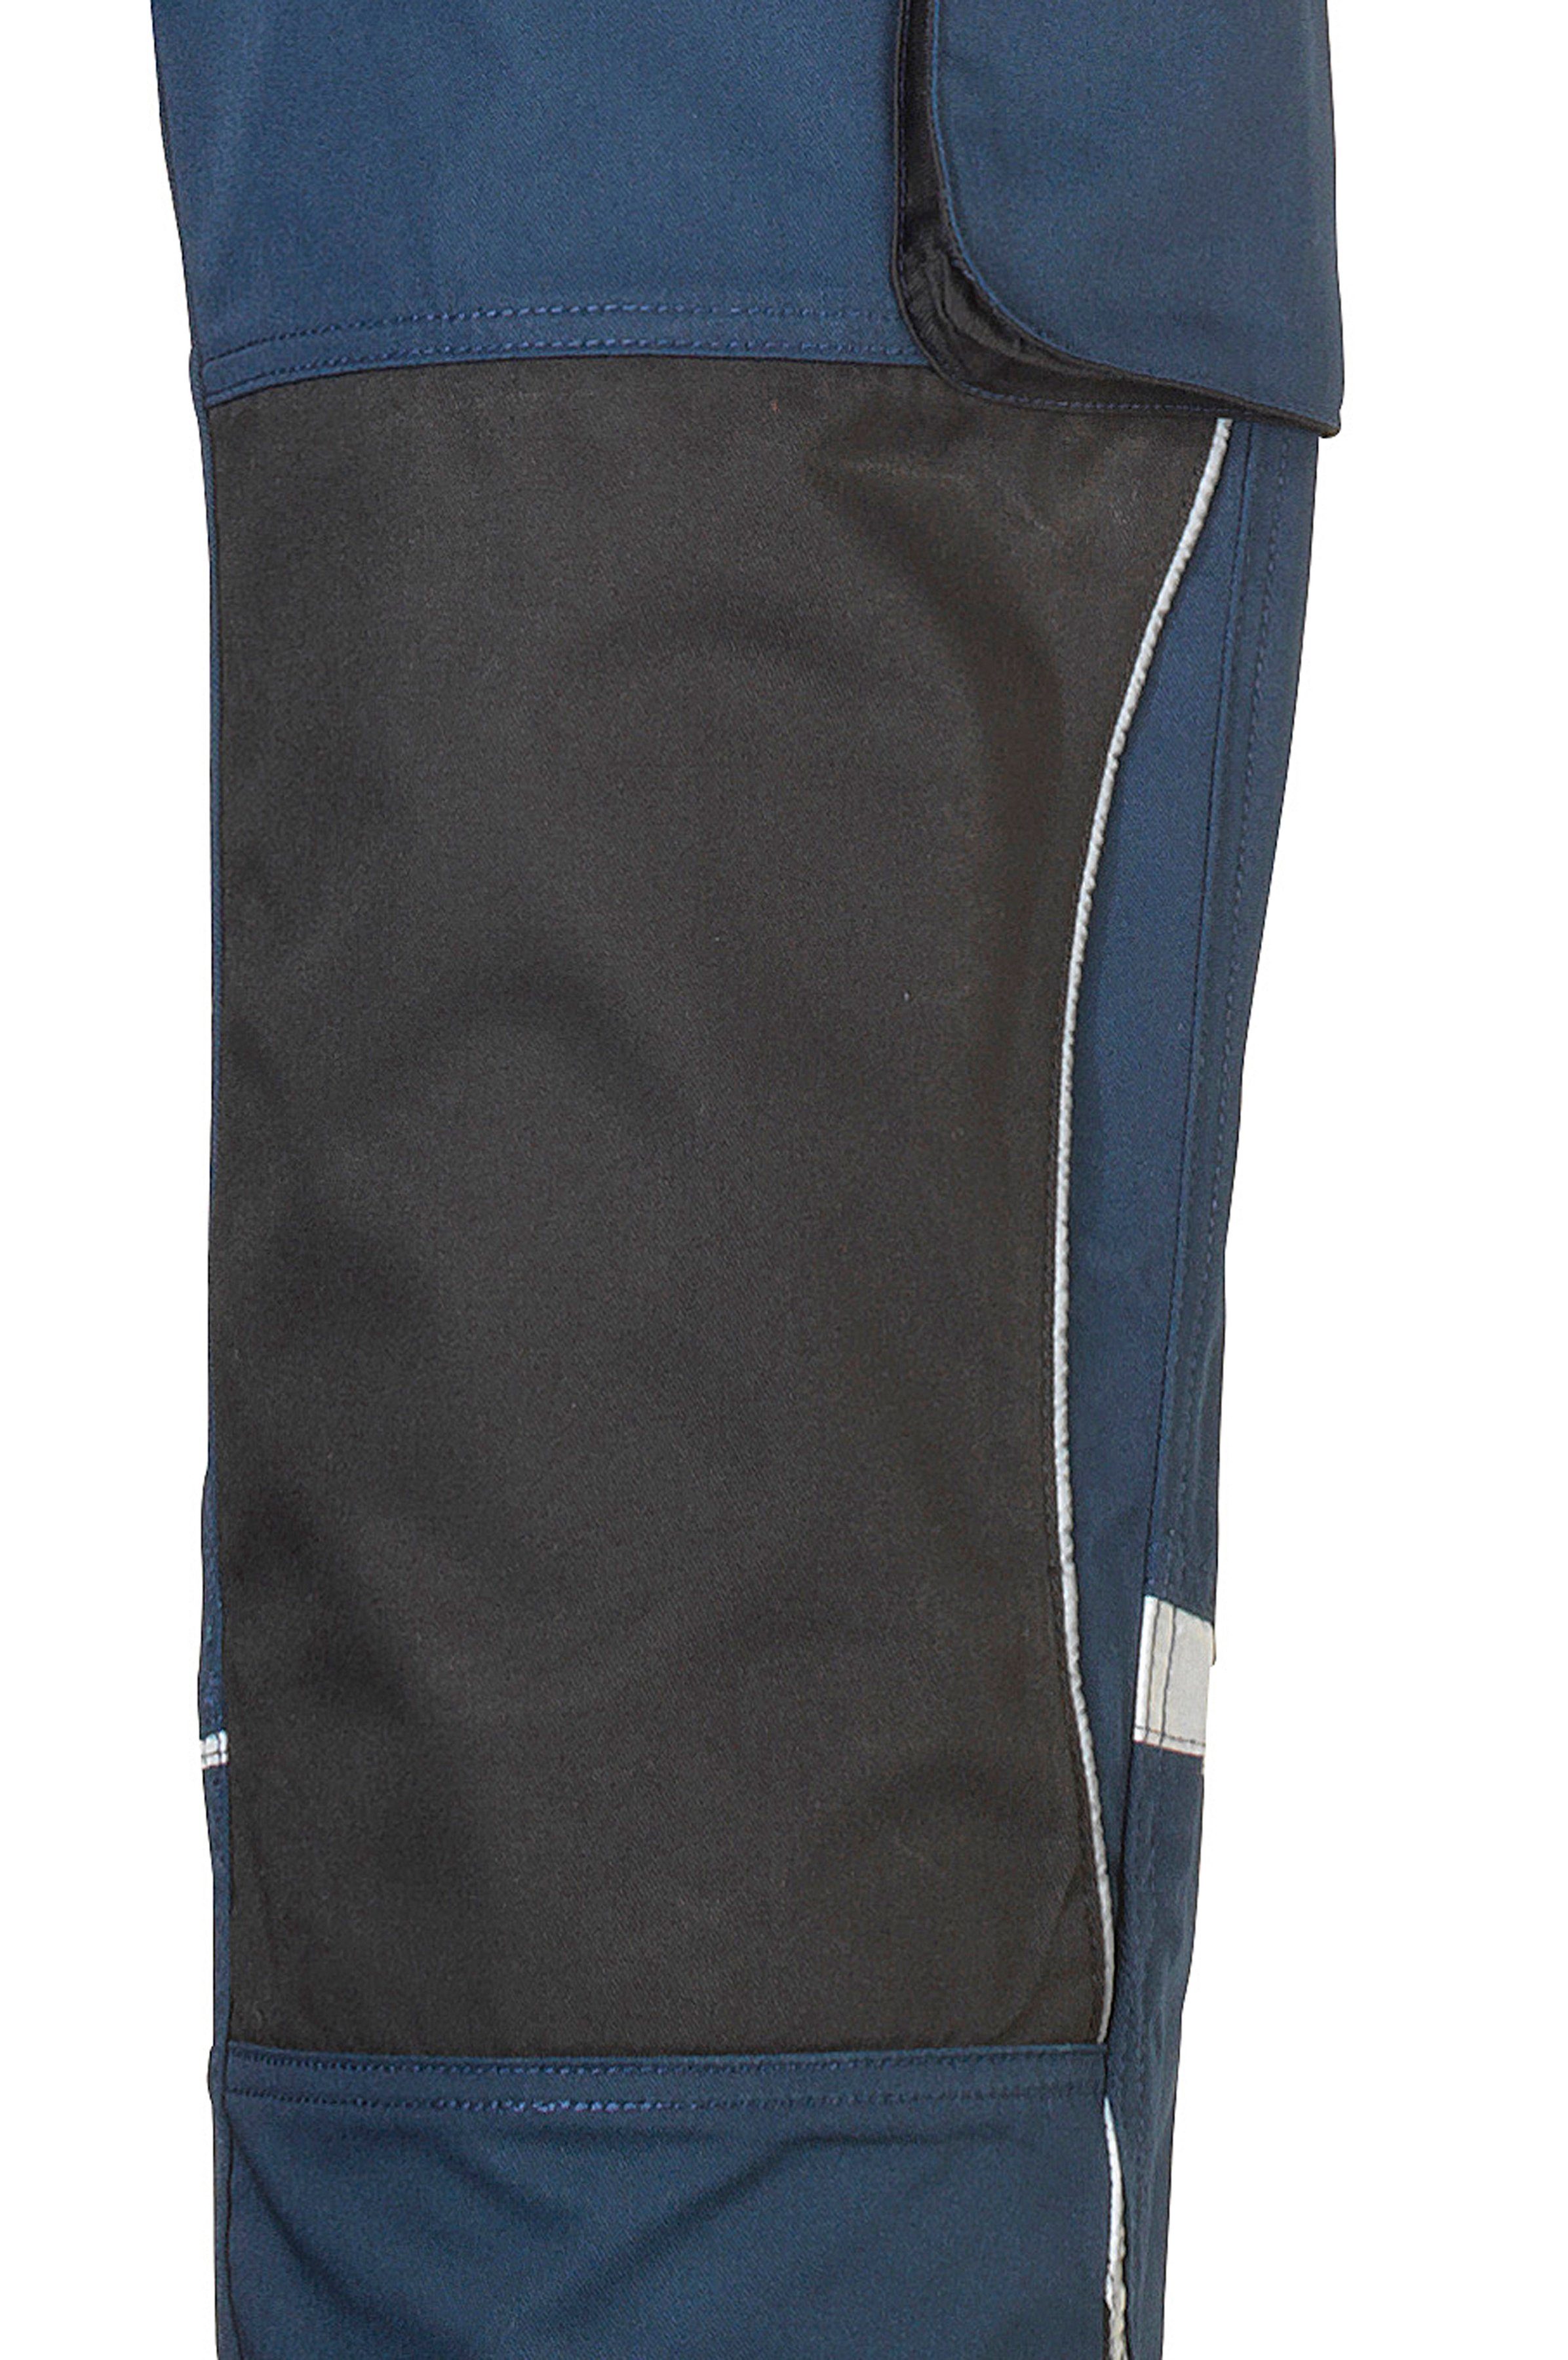 safety& more Latzhose Pull mit Reflexeinsätzen blau-schwarz